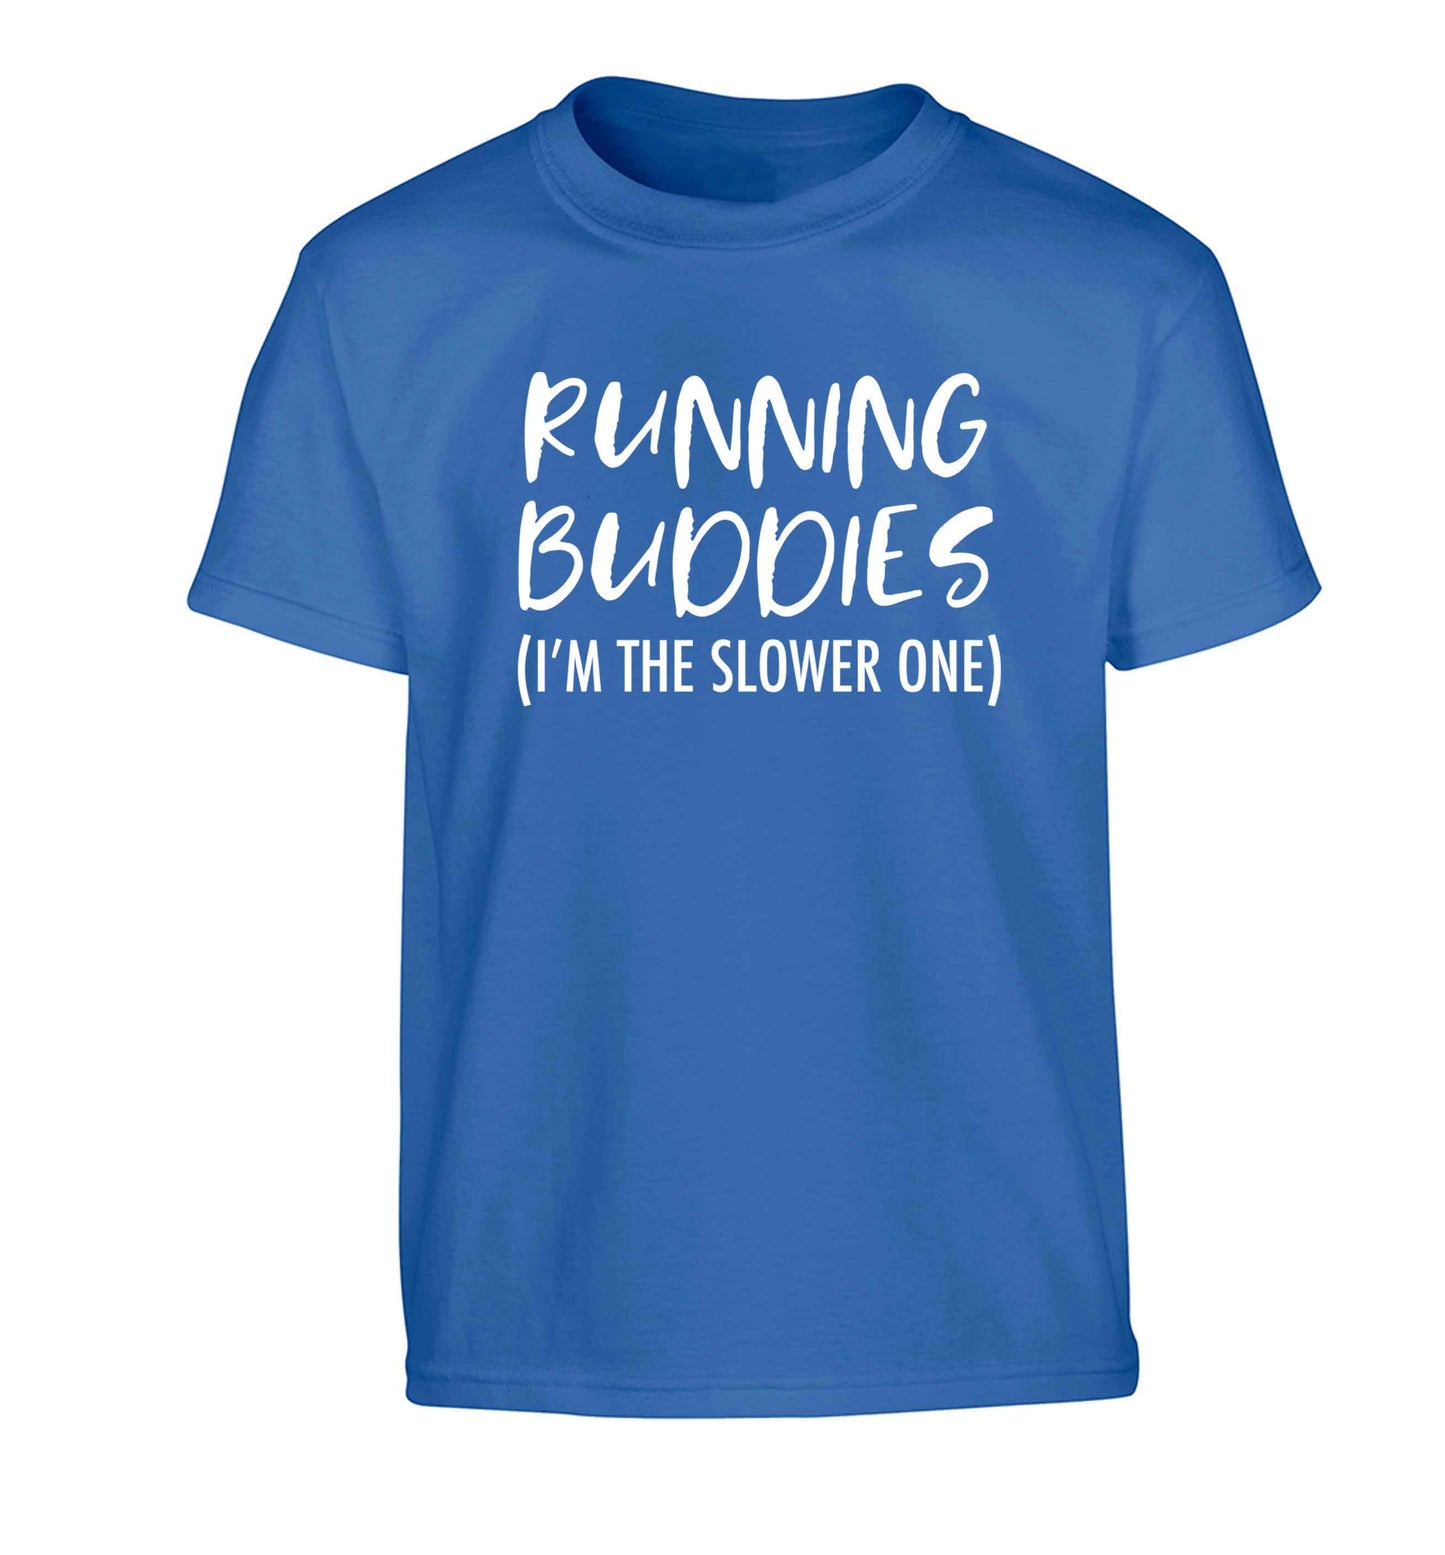 Running buddies (I'm the slower one) Children's blue Tshirt 12-13 Years